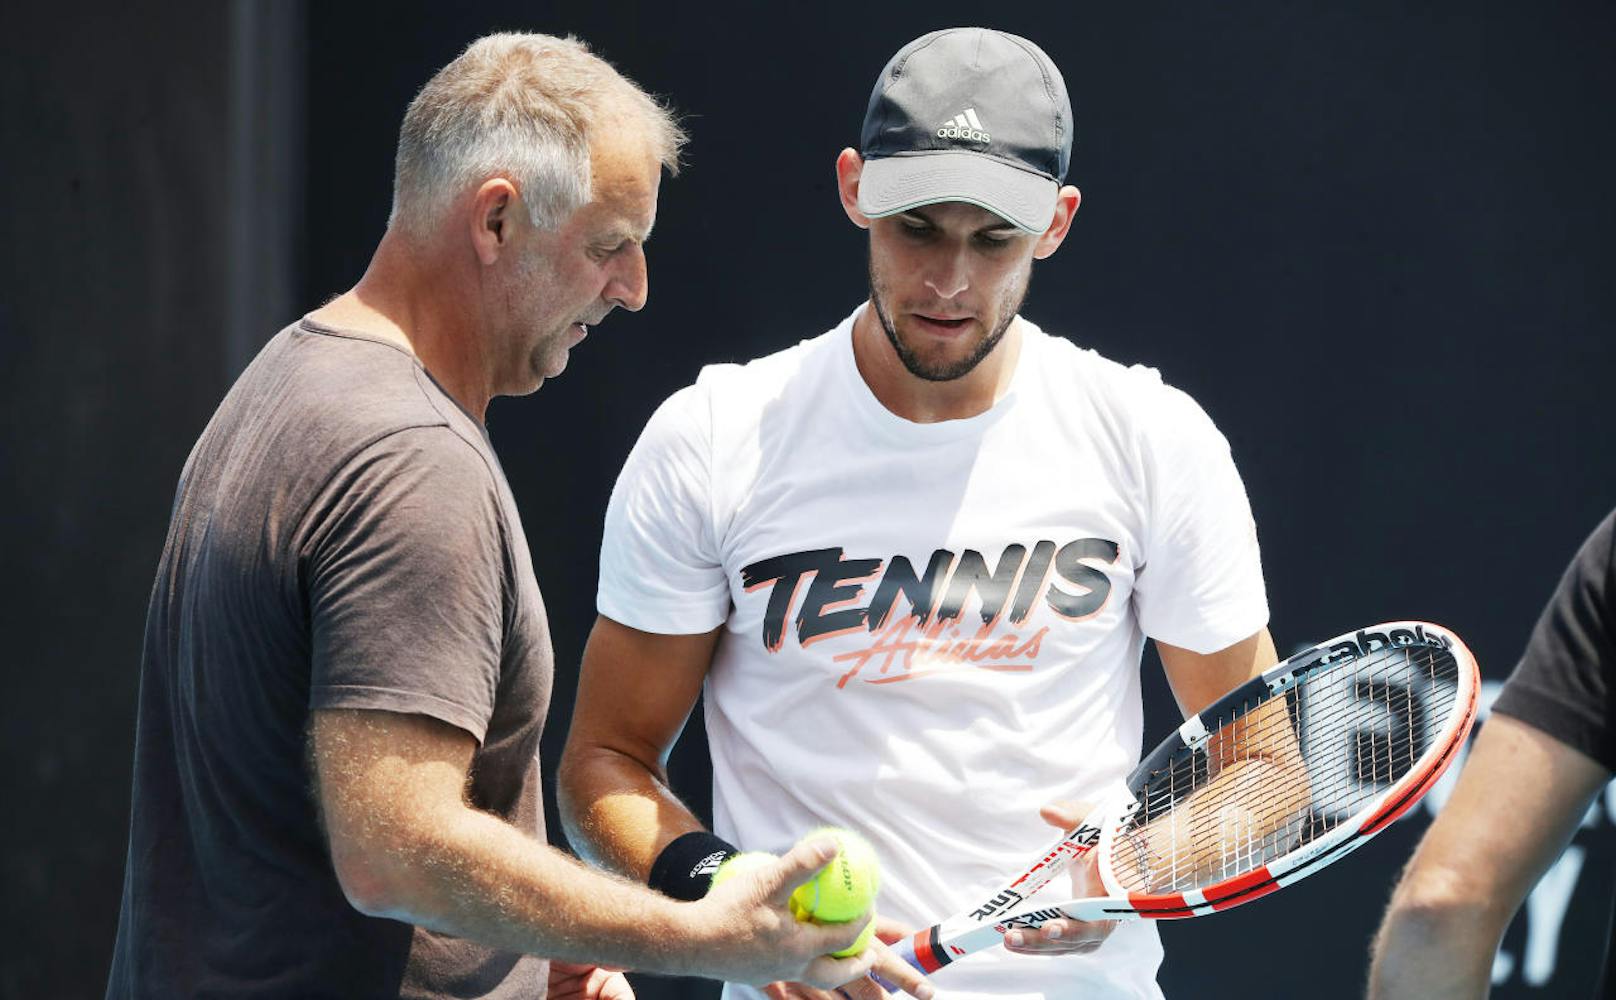 Vor den Australian Open präsentiert er die ehemalige Nummer 1 Thomas Muster als neuen Trainer: "Er wird mir weiterhelfen", meint er.